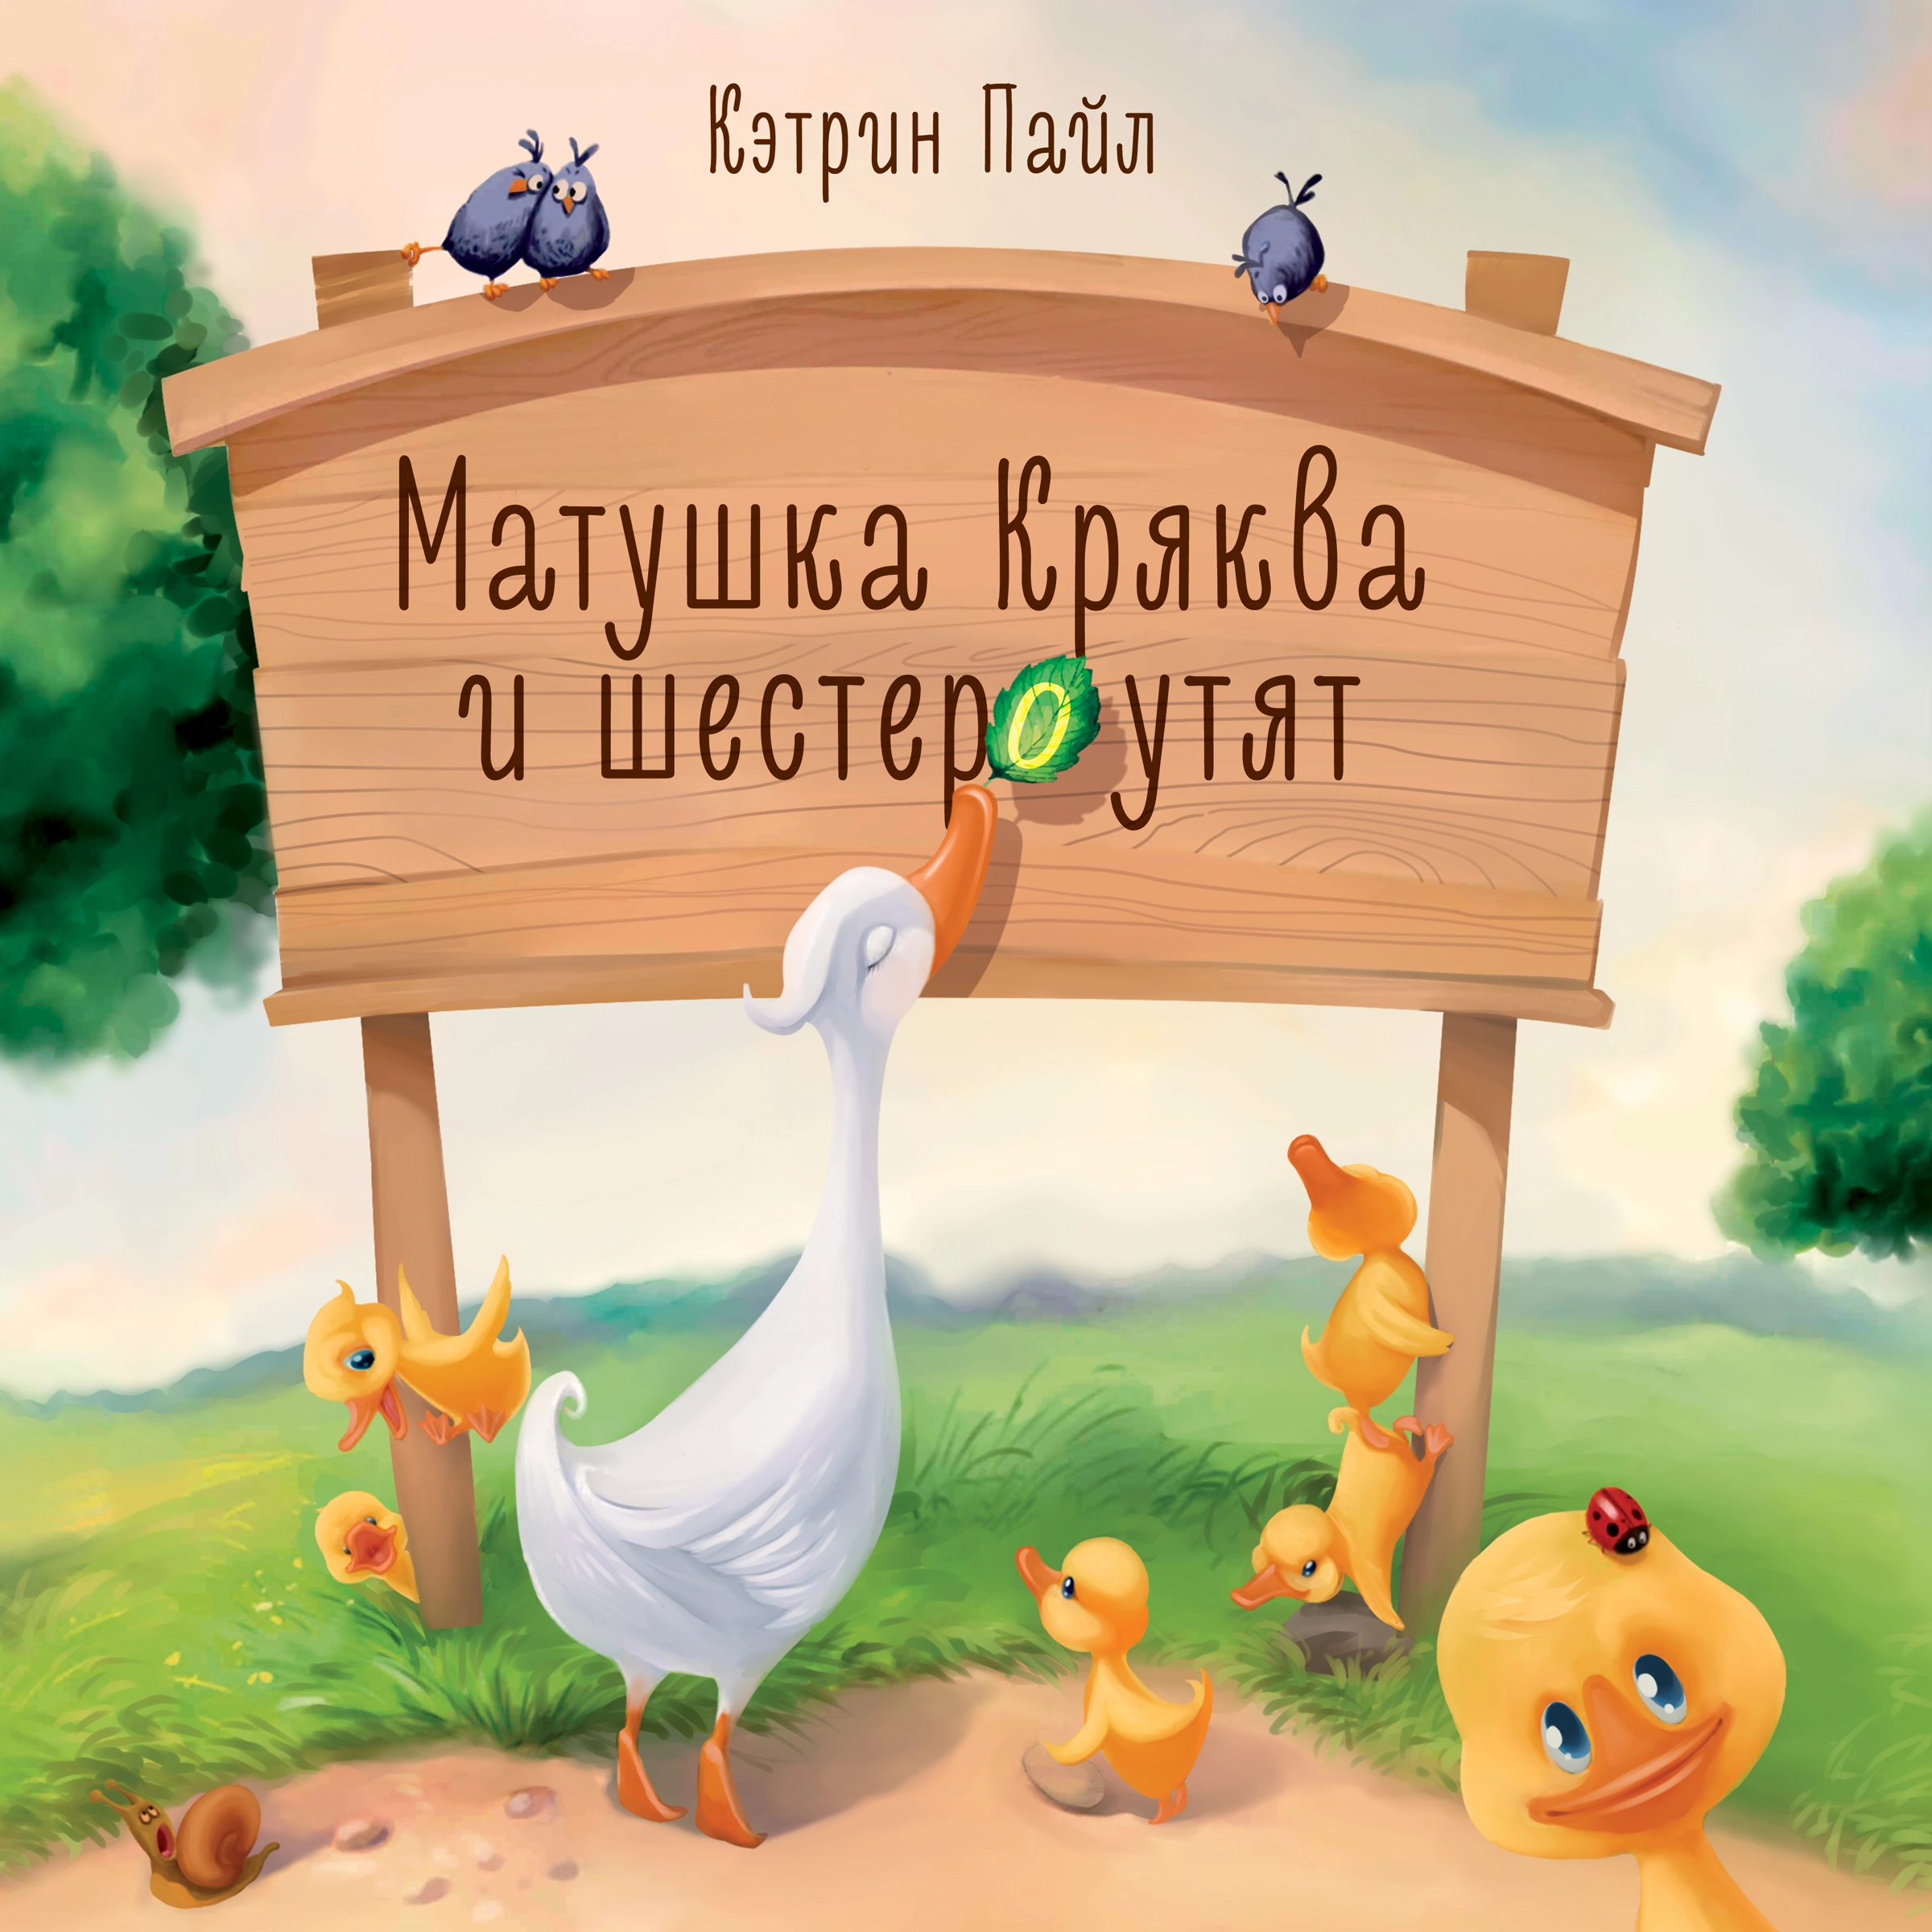 Матушка Кряква и шестеро утят Audiobook by Кэтрин Пайл